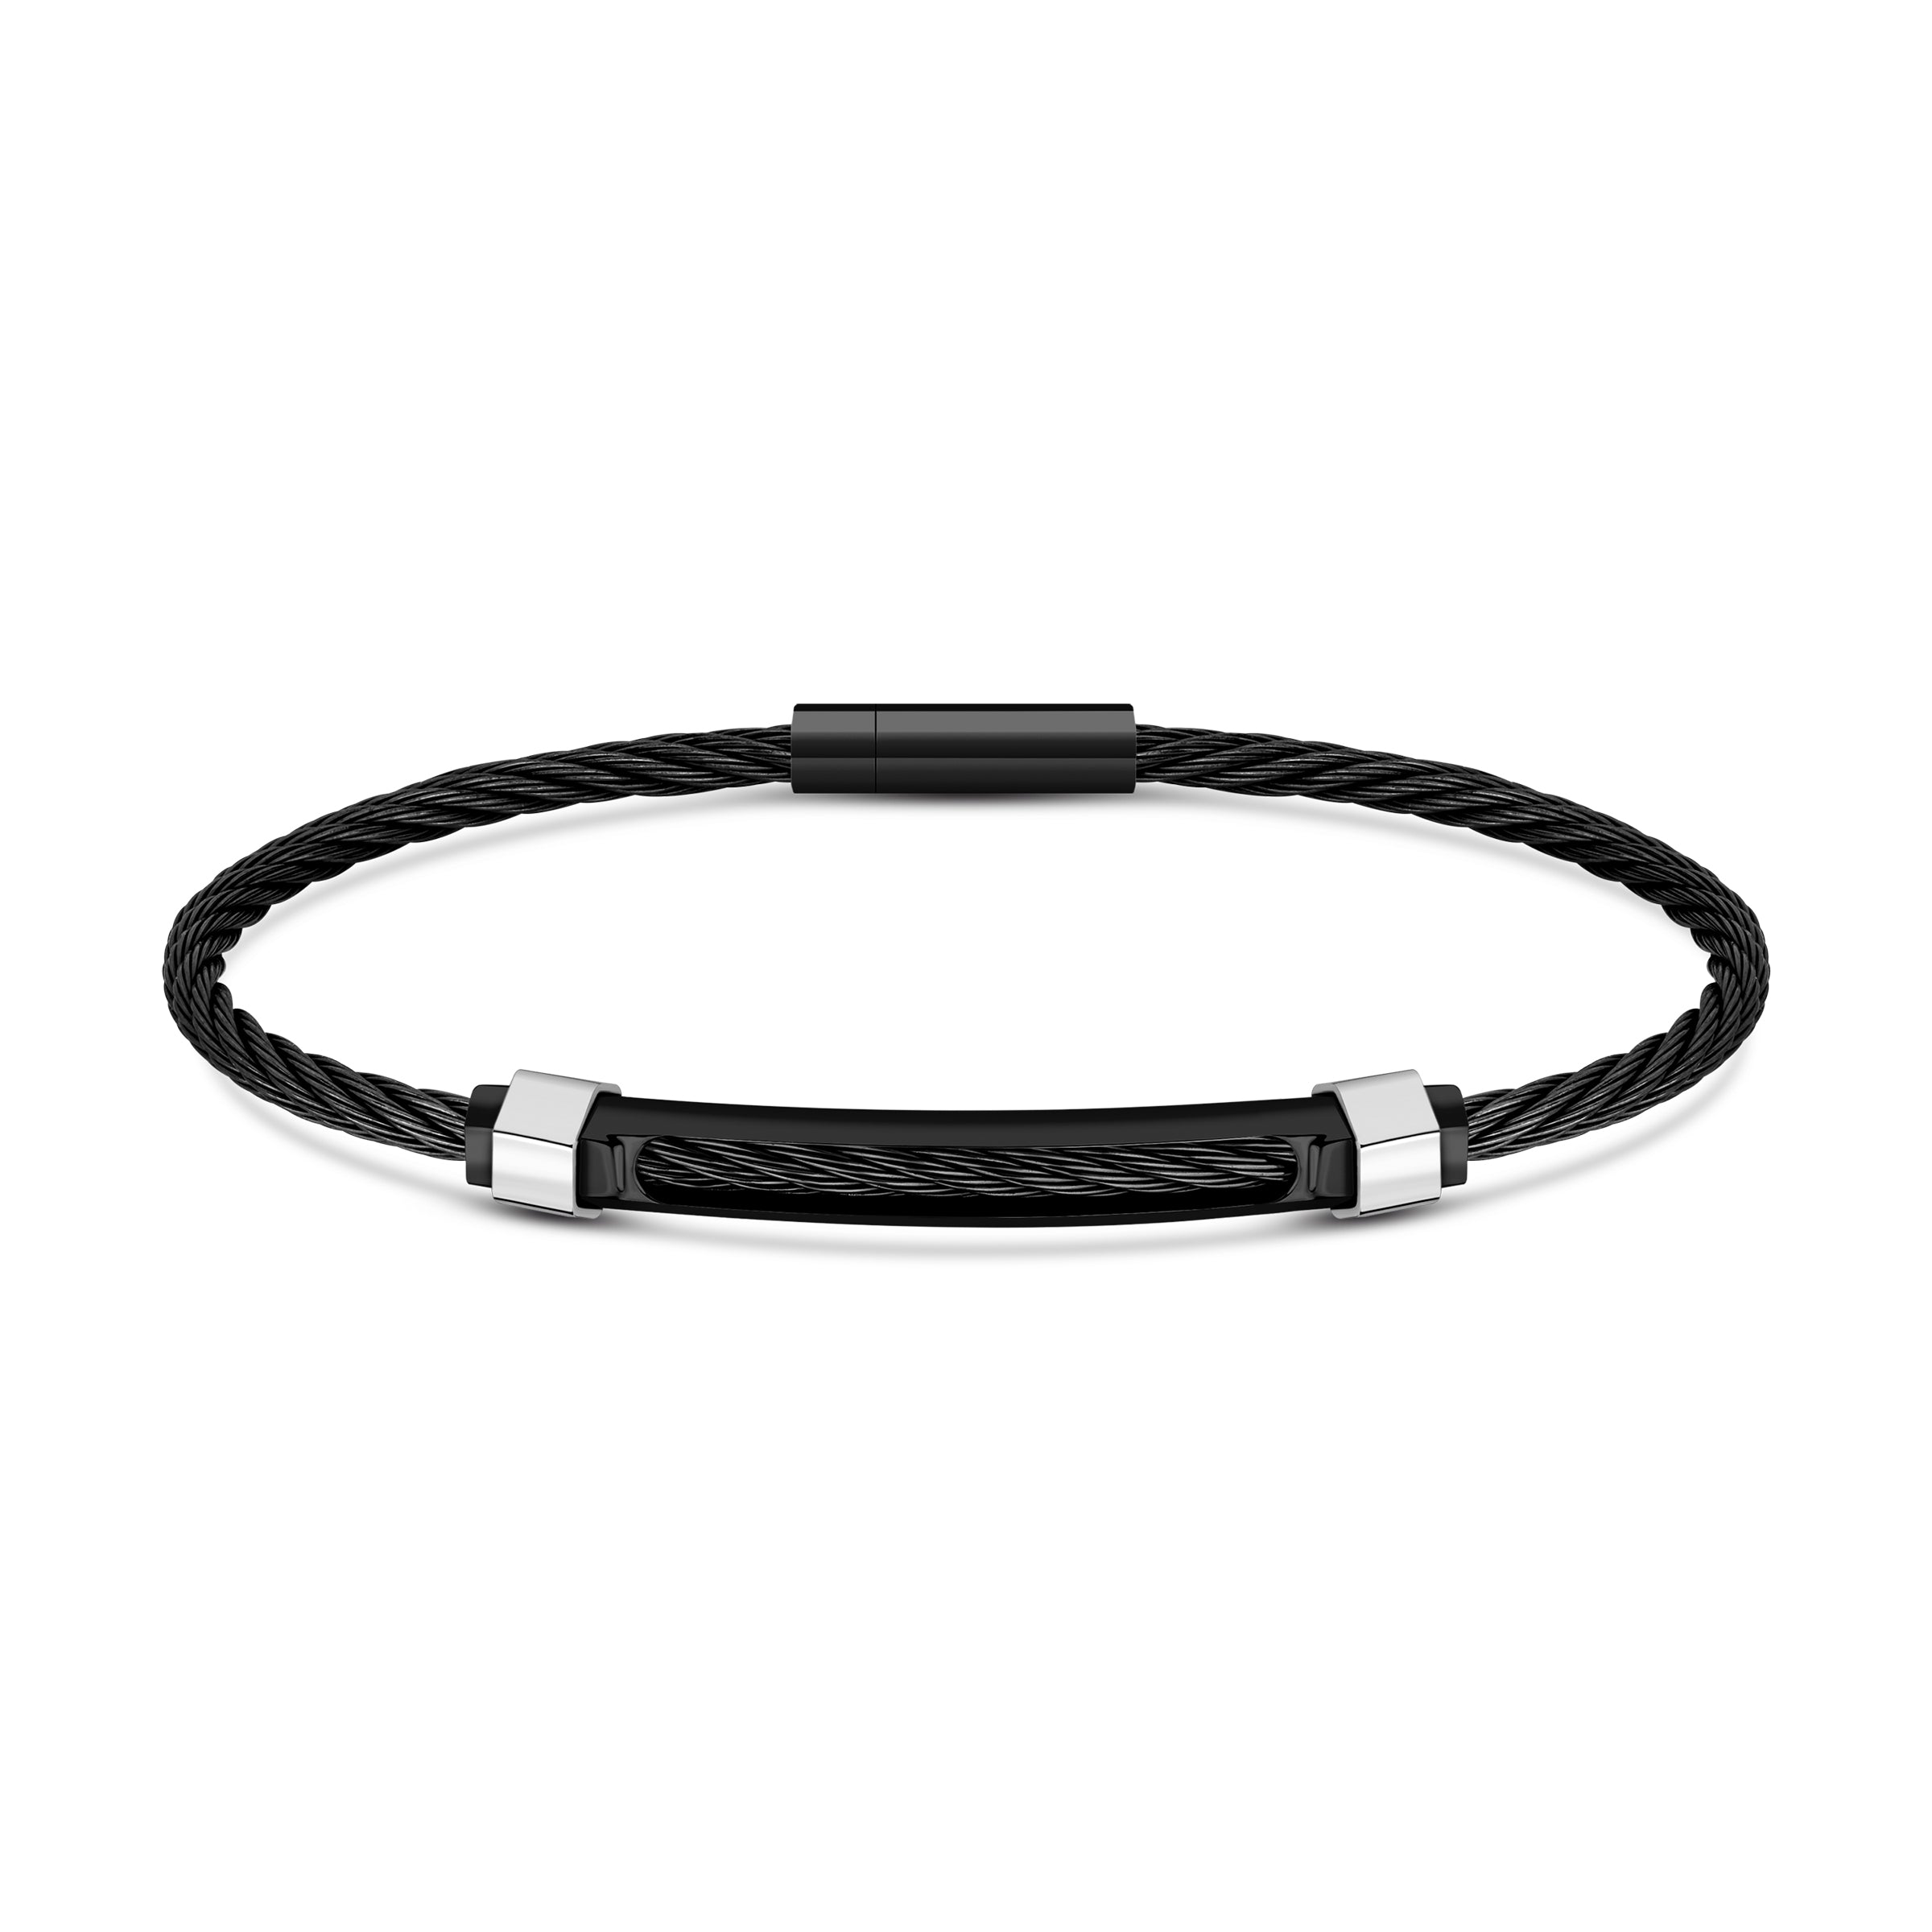 Cerruti Black Bracelet for Men - CERBR-0014